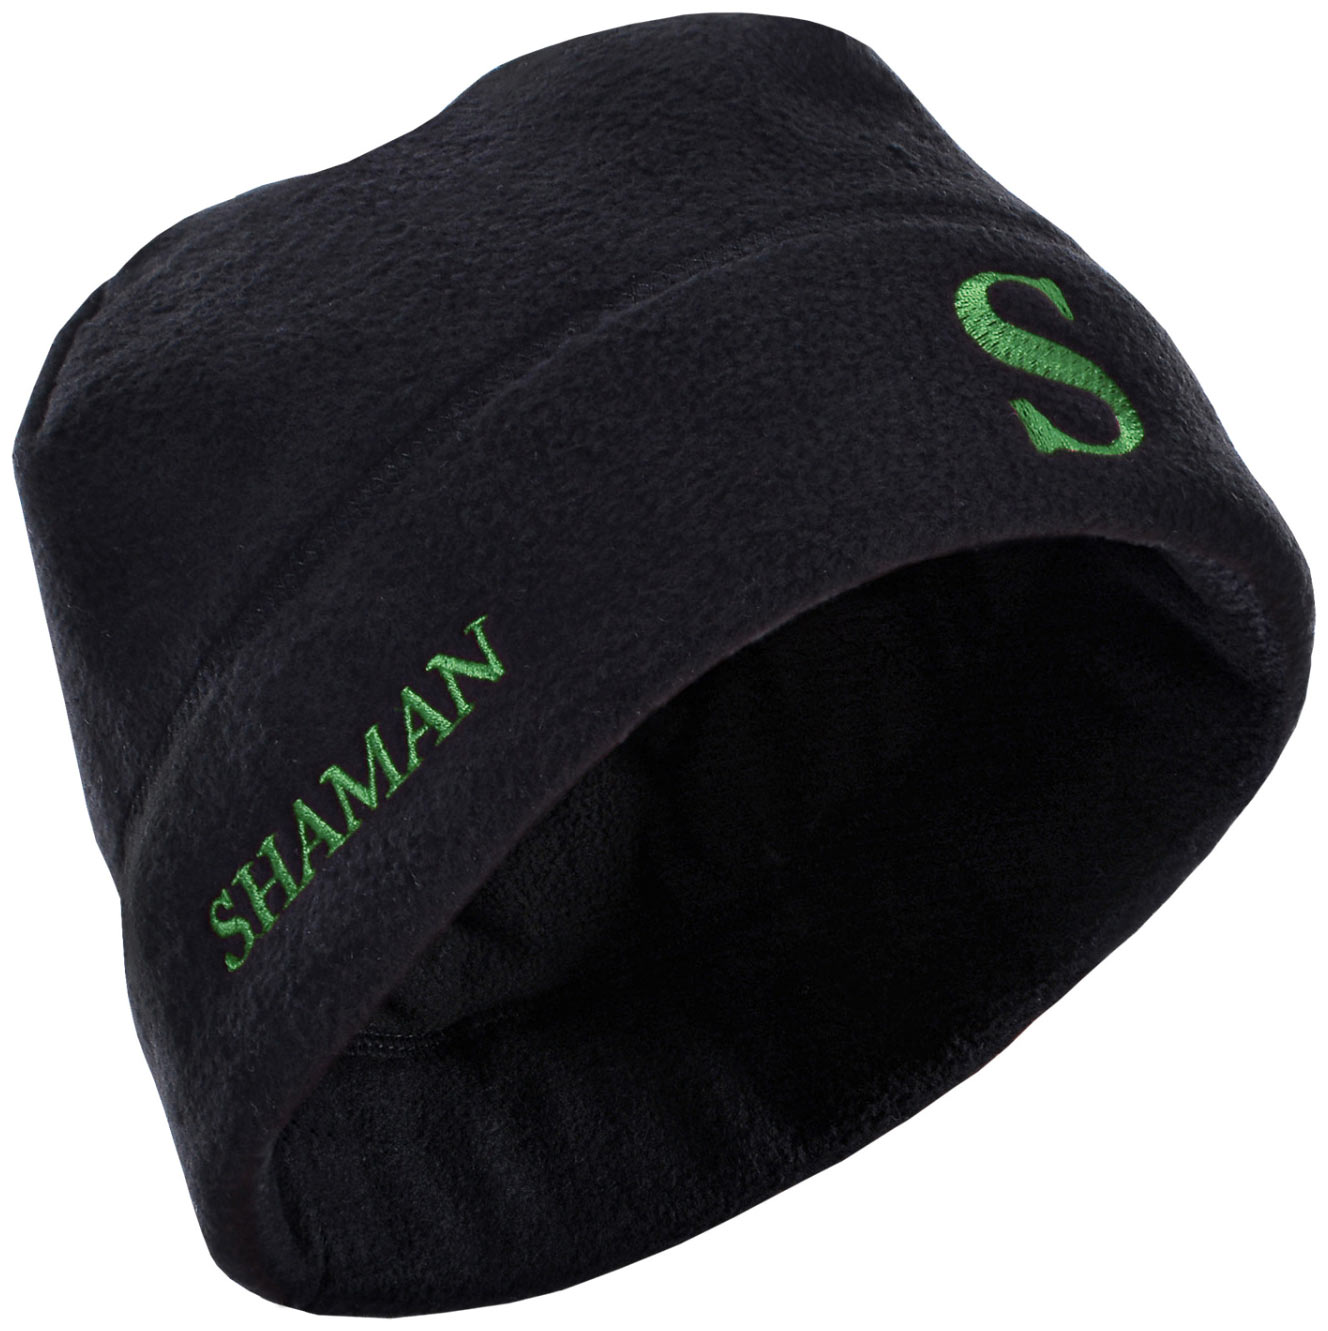 Шапка Shaman черная с зеленой вышивкой - фото 1